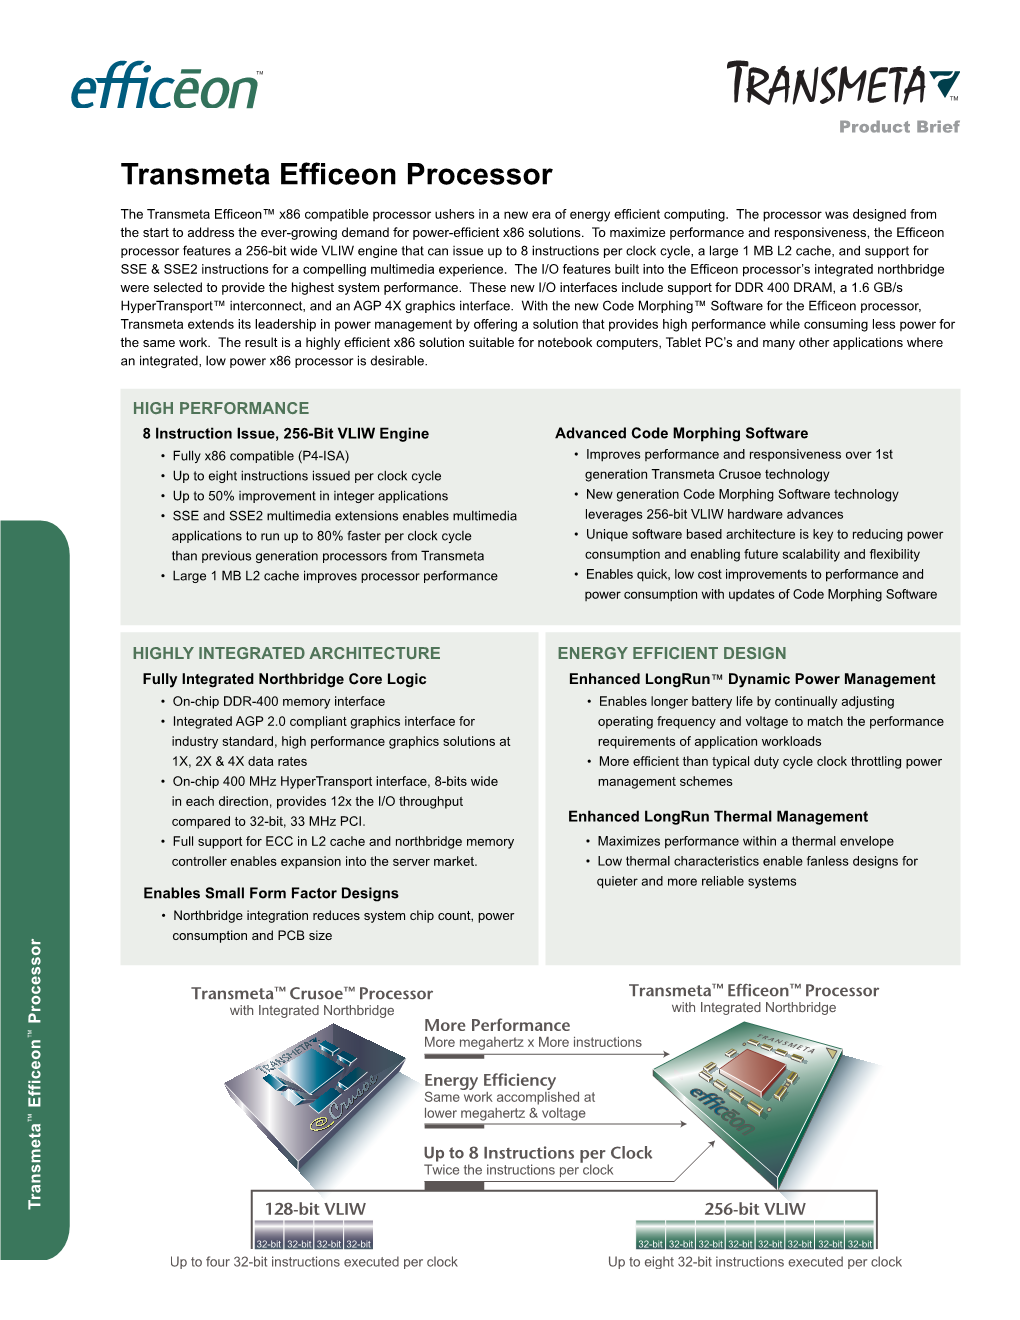 Transmeta Efficeon Processor